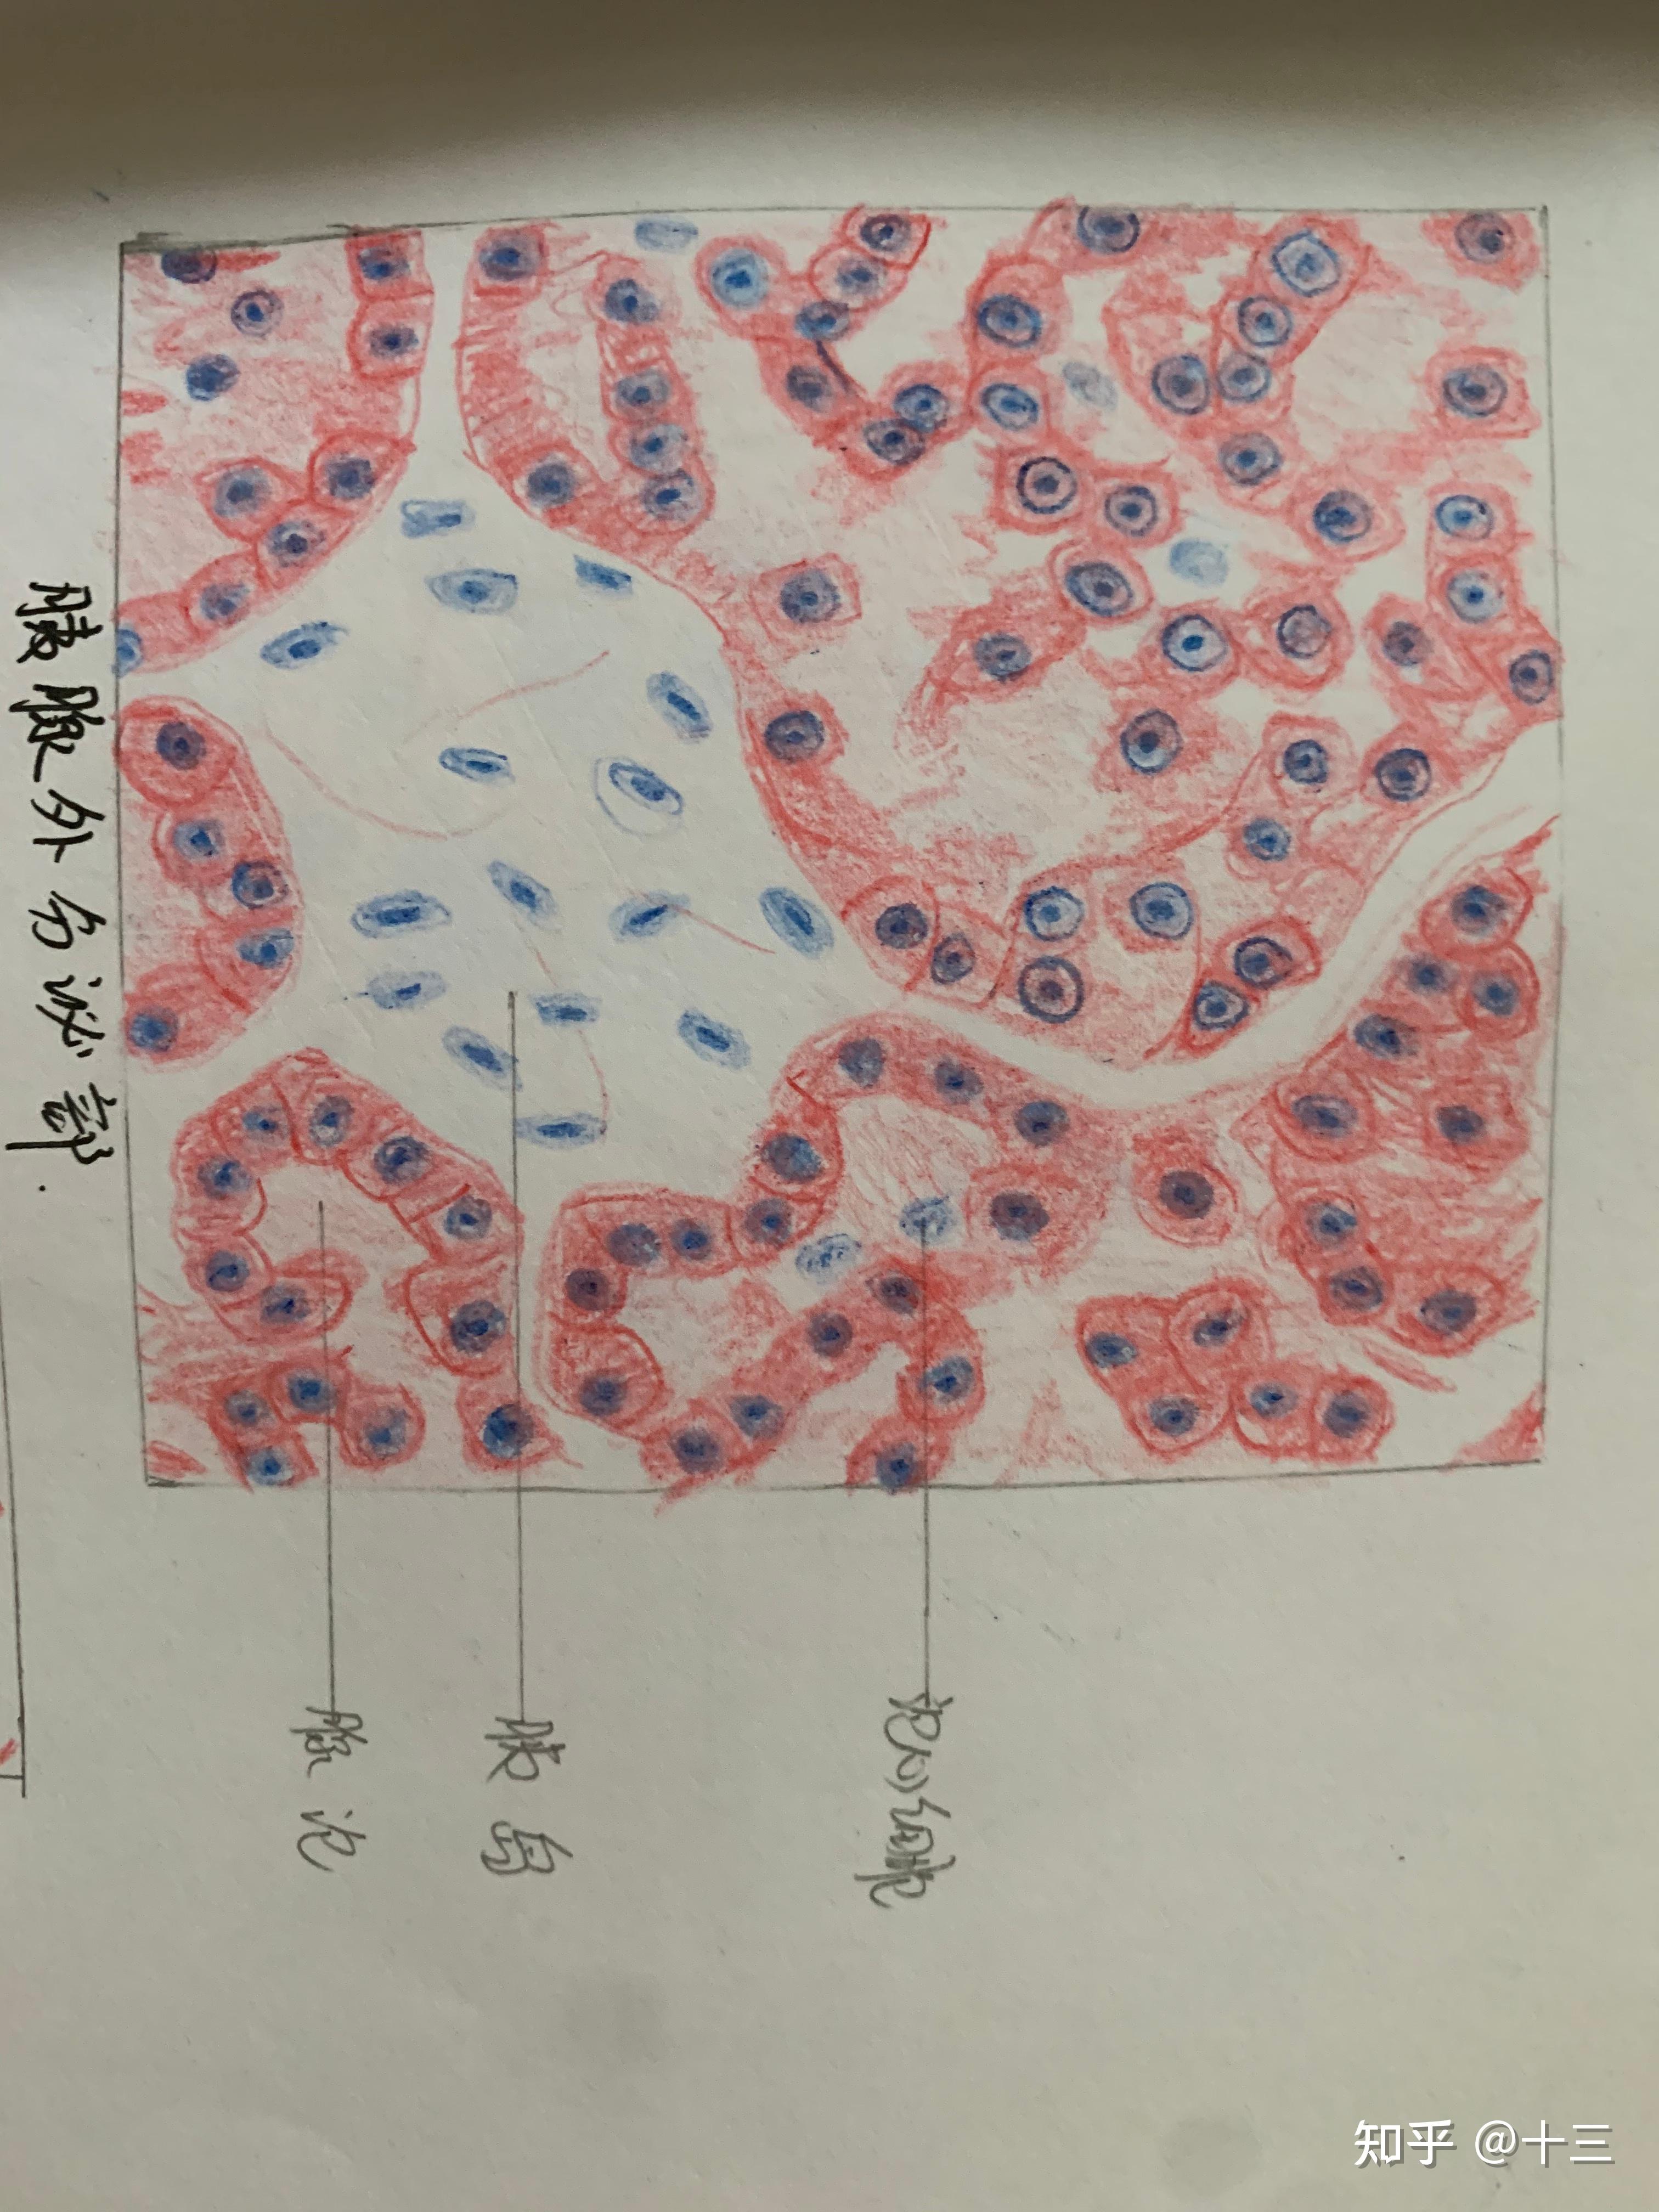 组胚实验红蓝铅笔手绘图 